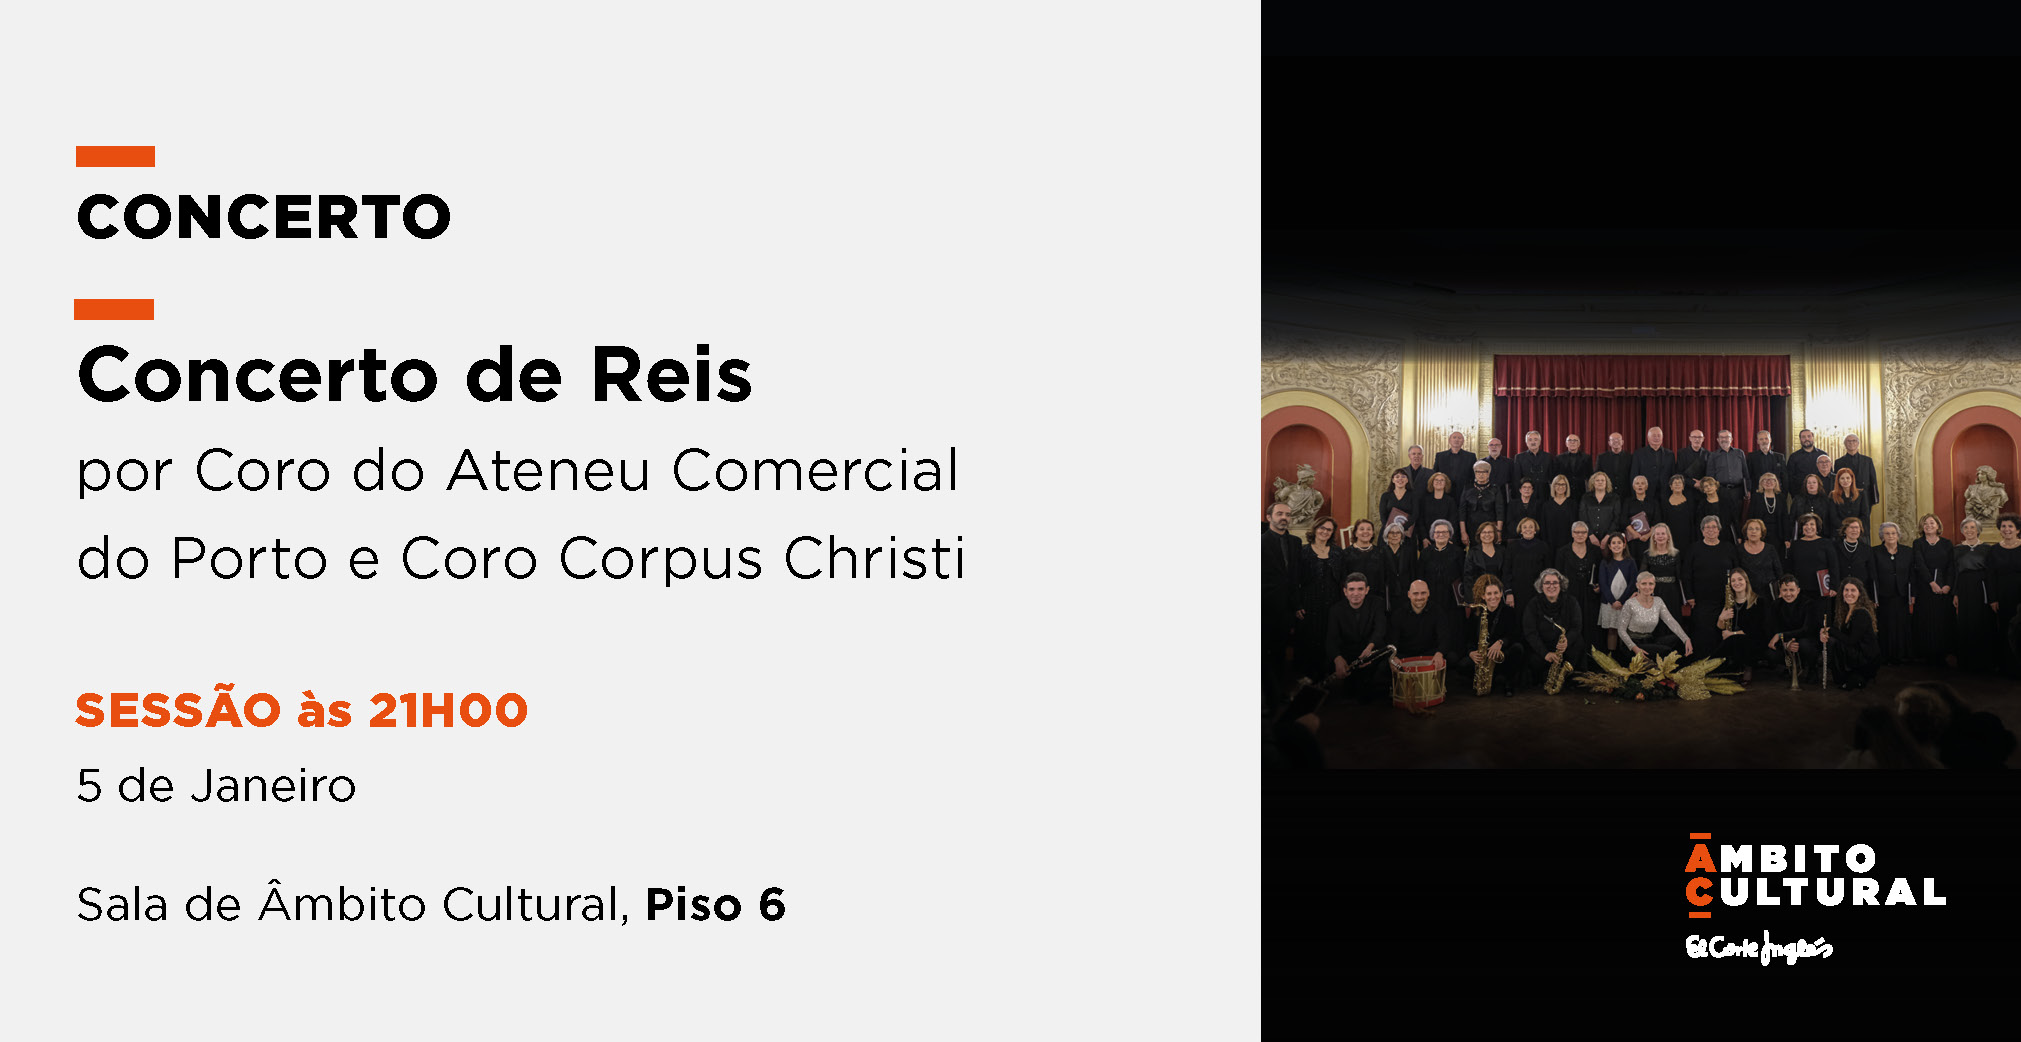 “Concerto de Reis” por Coro do Ateneu Comercial do Porto e Coro Corpus Christi